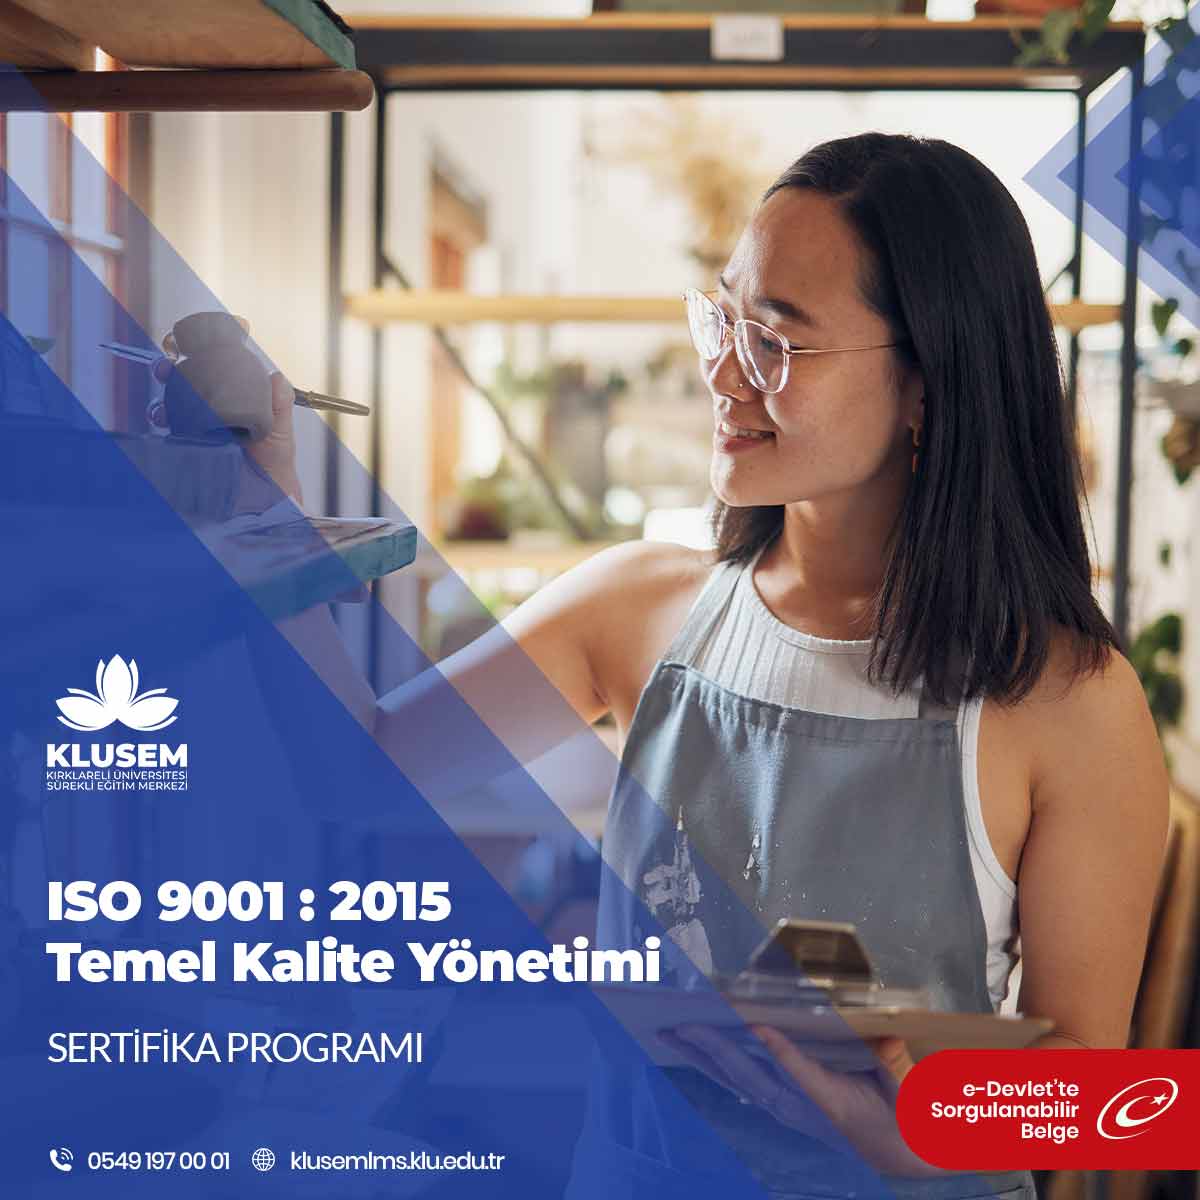 ISO 9001 : 2015 Temel Kalite Yönetimi Sertifikalı Eğitim Programı